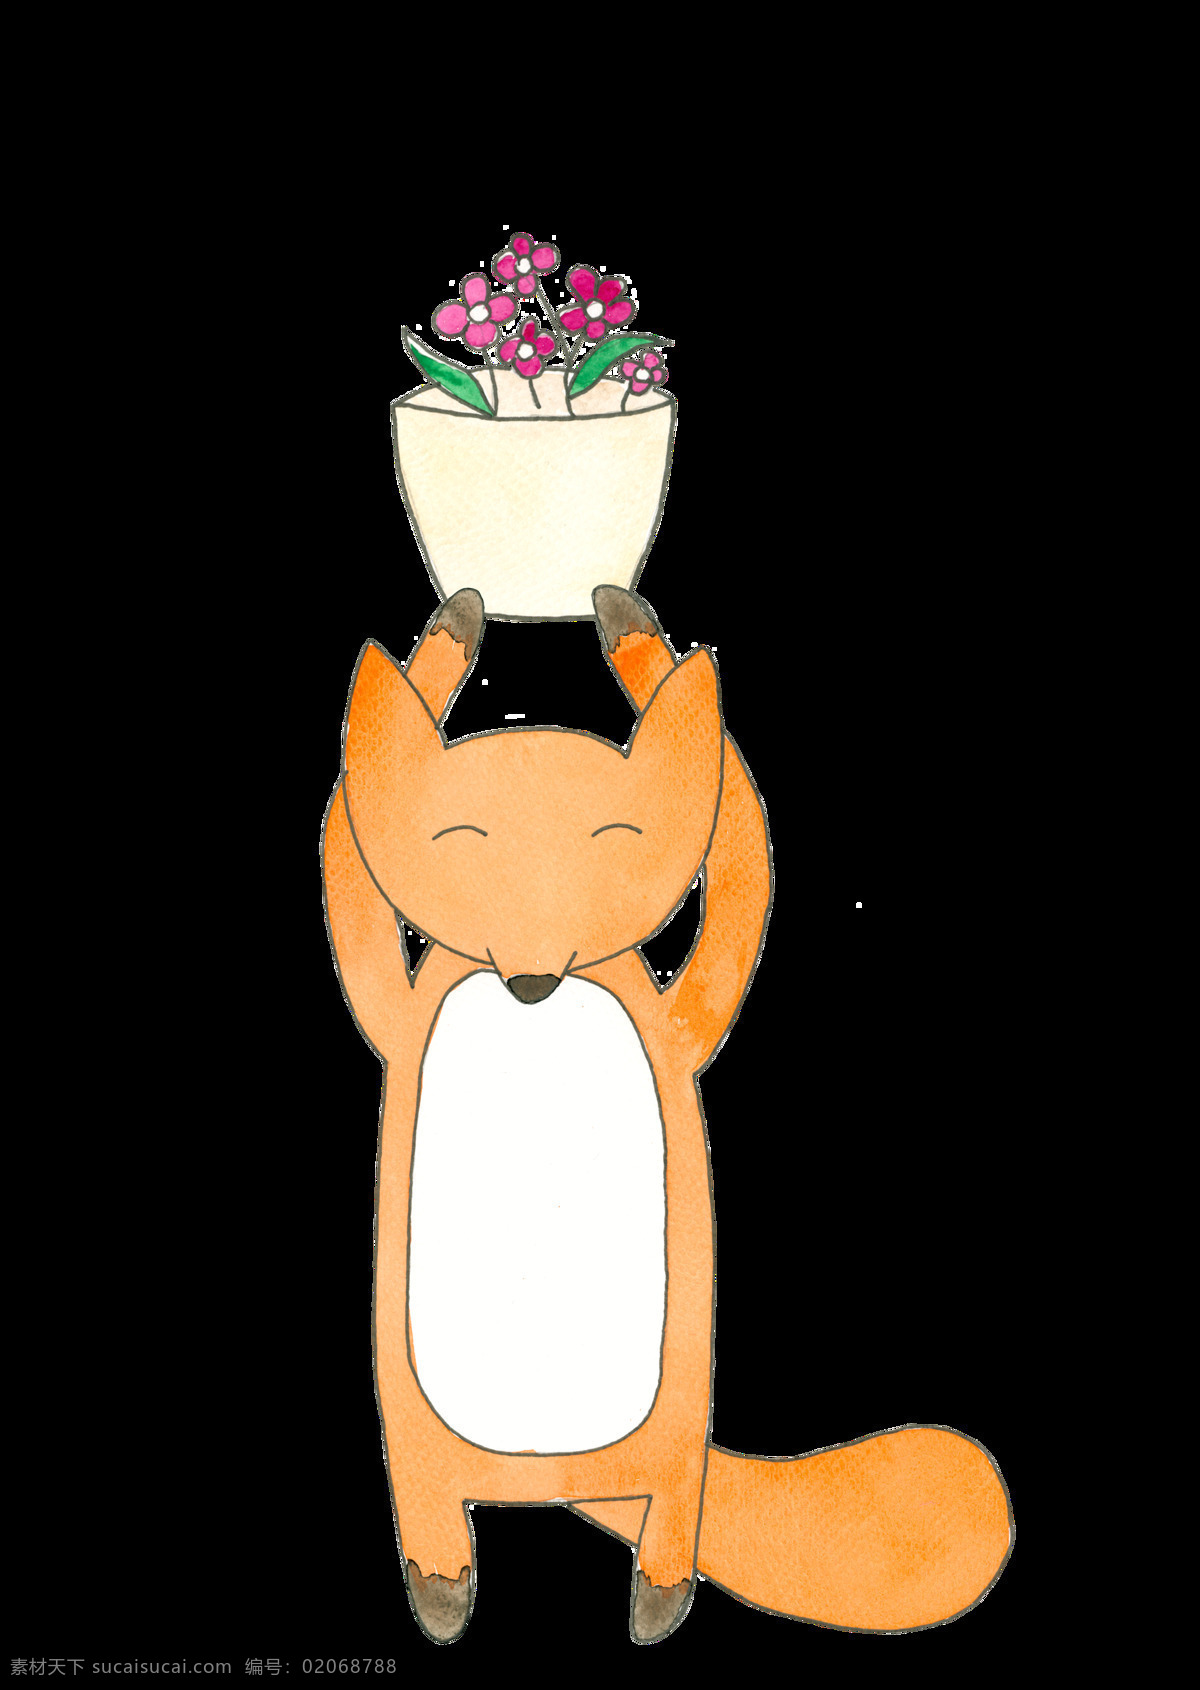 卡通 狐狸 透明 手绘 橙色 花盆 矢量素材 设计素材